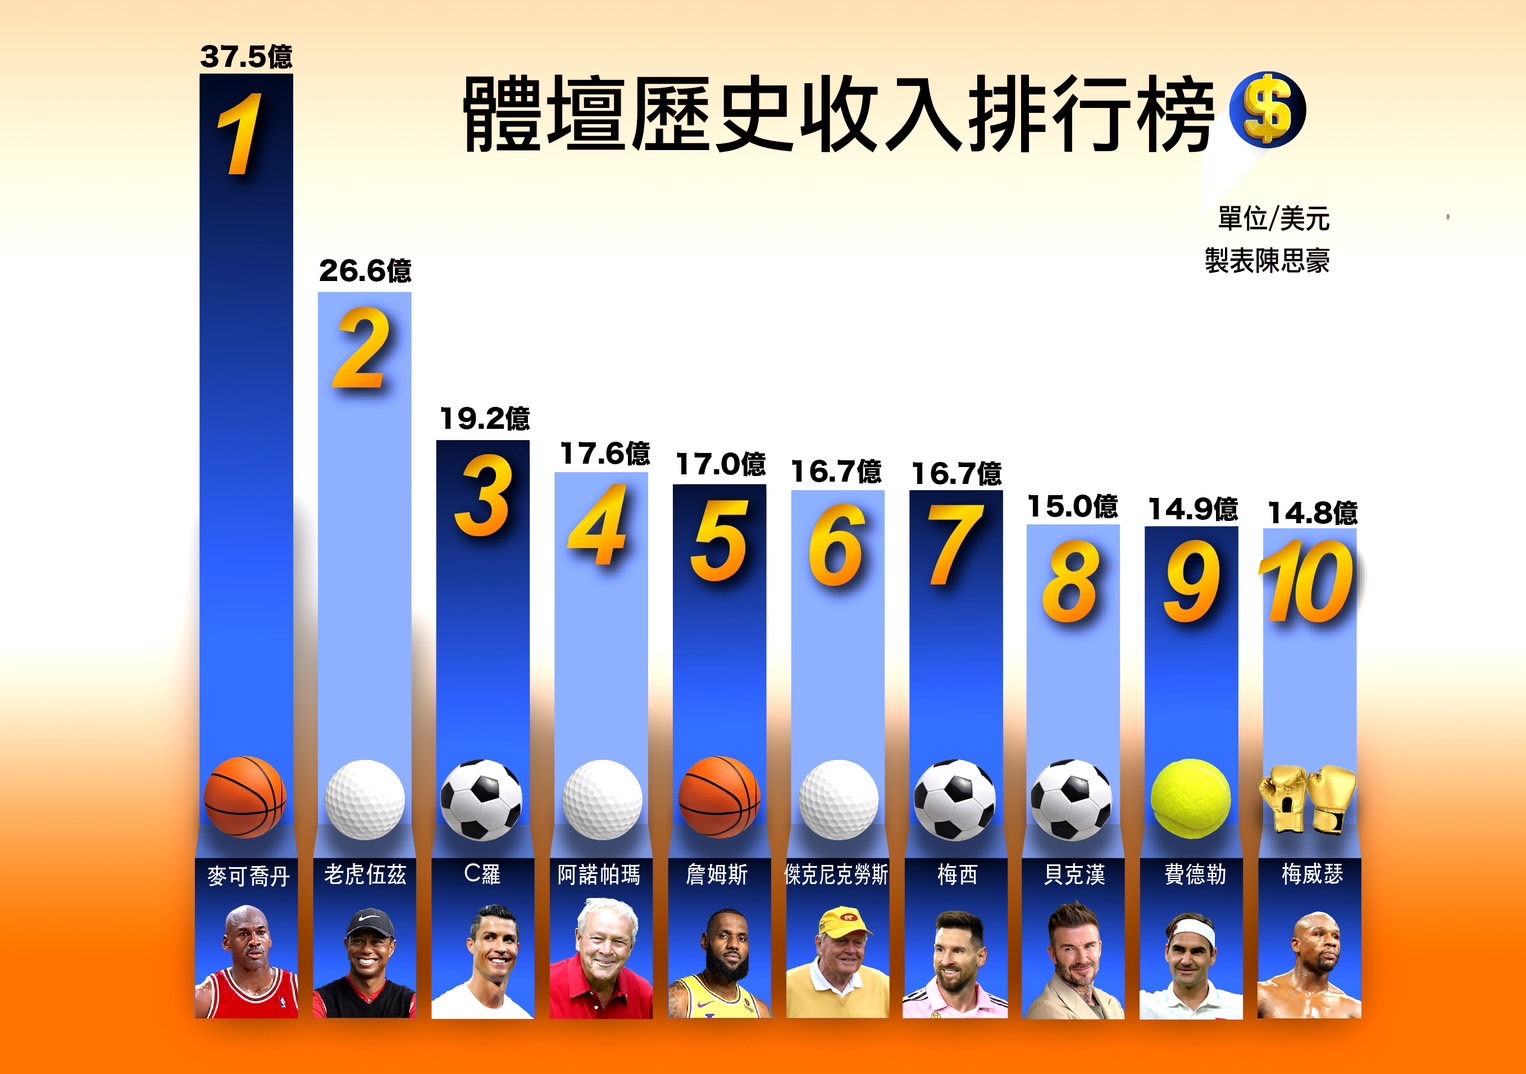 體育商業數據統計網站sportico公佈職業運動員歷史上收入排行榜。（取自sportico官網）圖／ 陳思豪製表